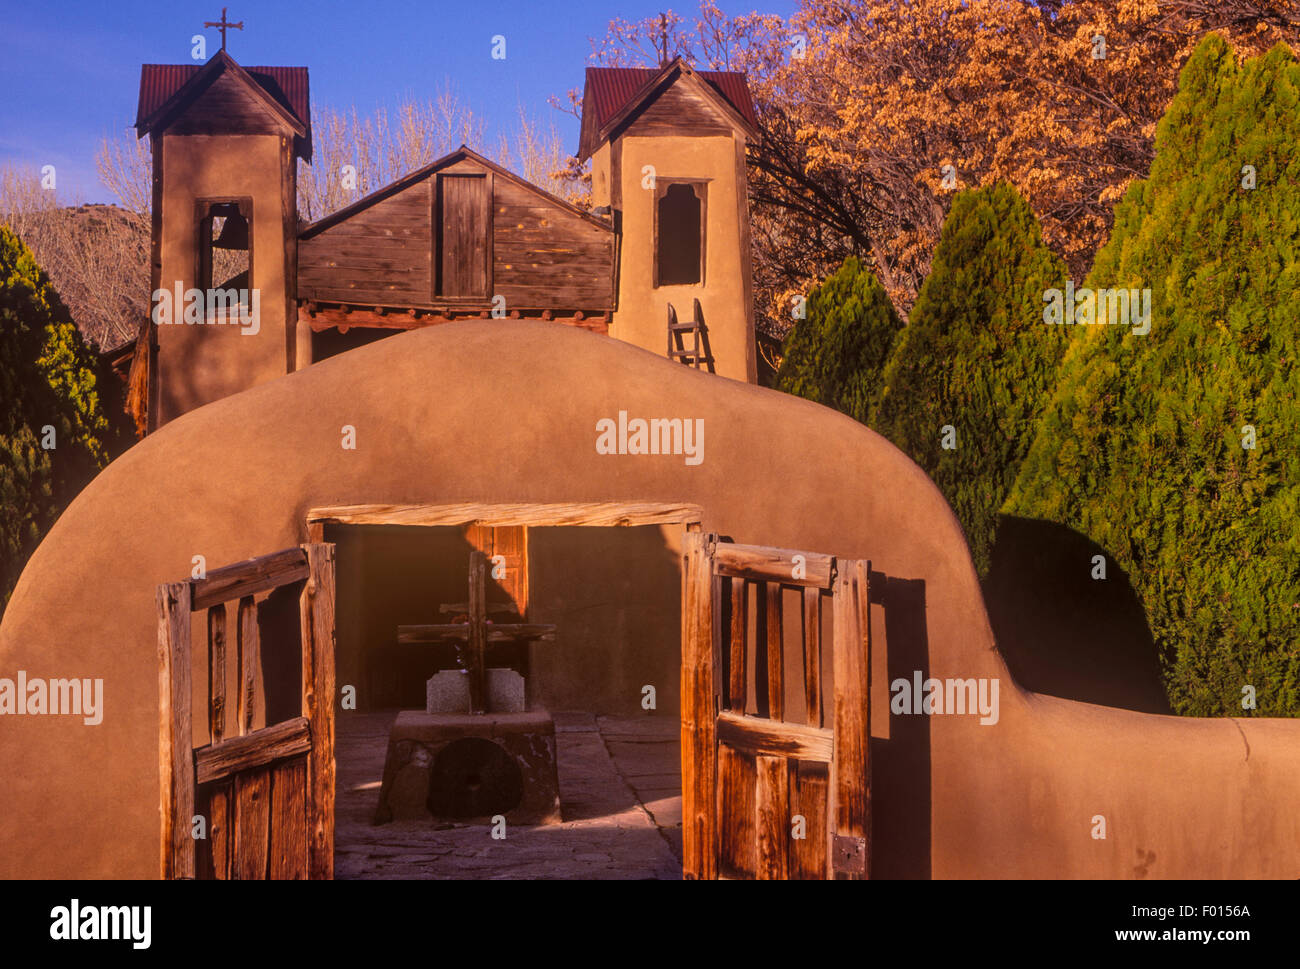 El Santuario de Chimayo, Chimayo, New Mexico Stockfoto